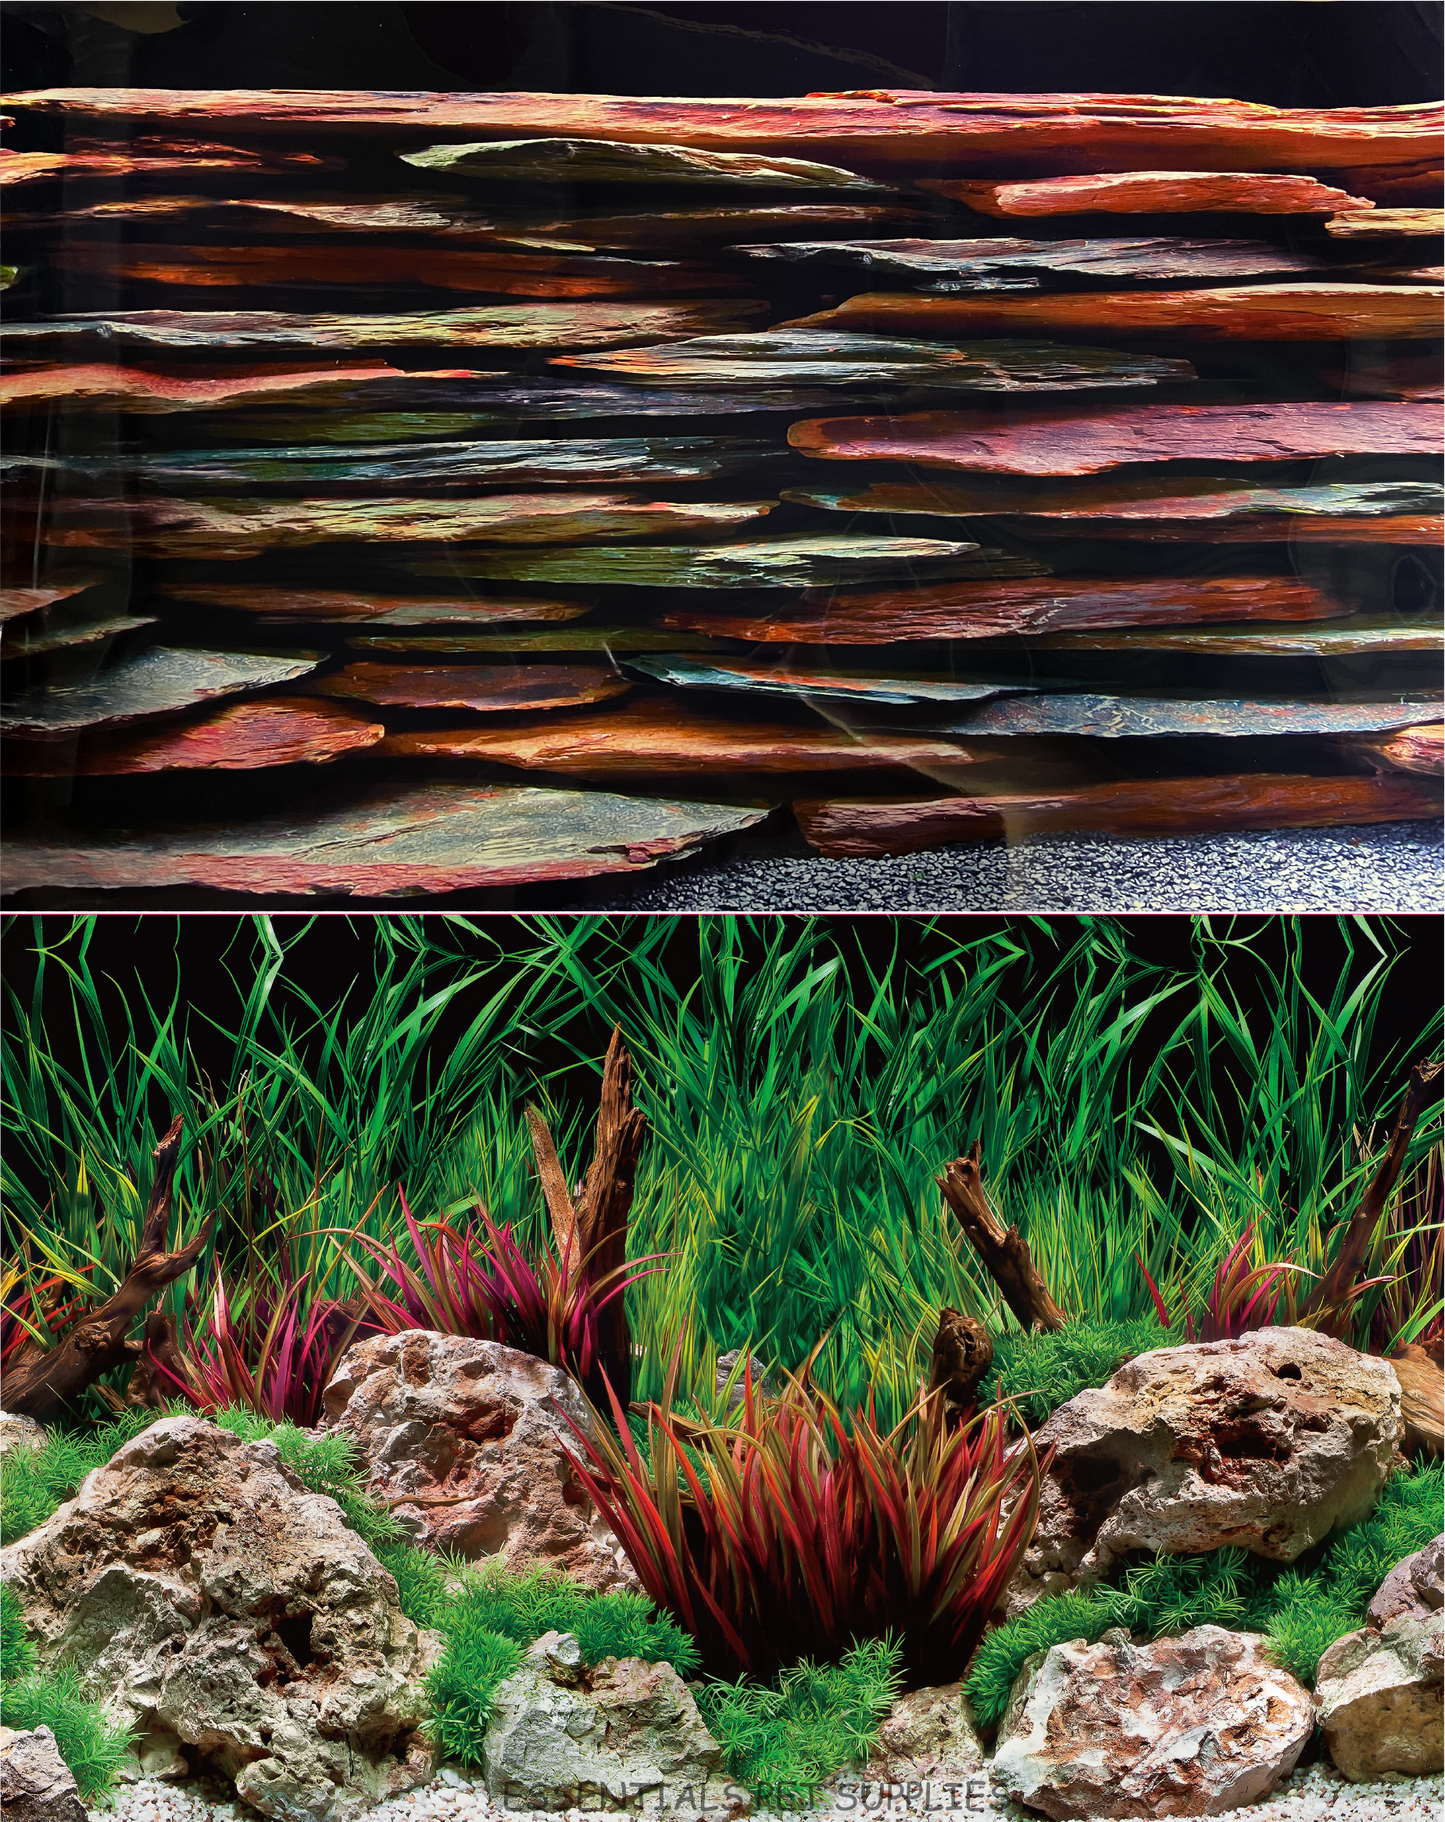 Aquarium Fish Tank Background Double Side Poster 18"(45cm)*5ft(153cm)